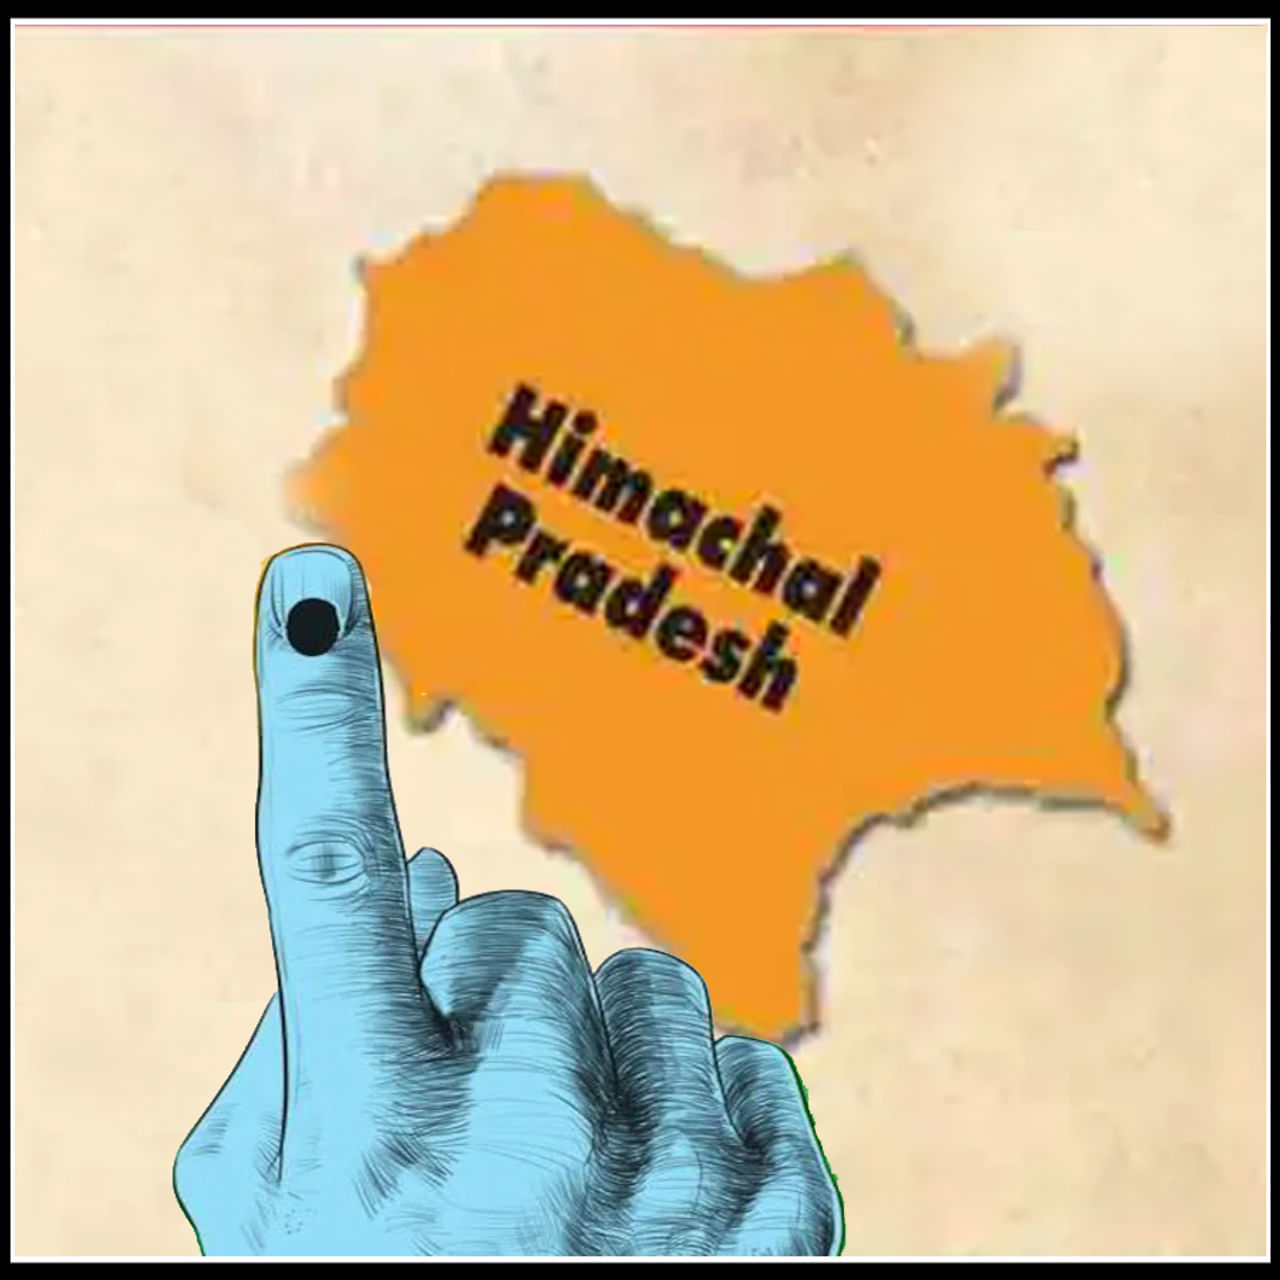 Himachal Pradesh Elections 2022: హిమాచల్ ప్రదేశ్ అసెంబ్లీకి త్వరలో ఎన్నికలు జరగనున్నాయి. ఆ రాష్ట్రంలోని మొత్తం 68 అసెంబ్లీ స్థానాలకు నవంబరు మాసంలో ఎన్నికలు నిర్వహించనున్నారు. 